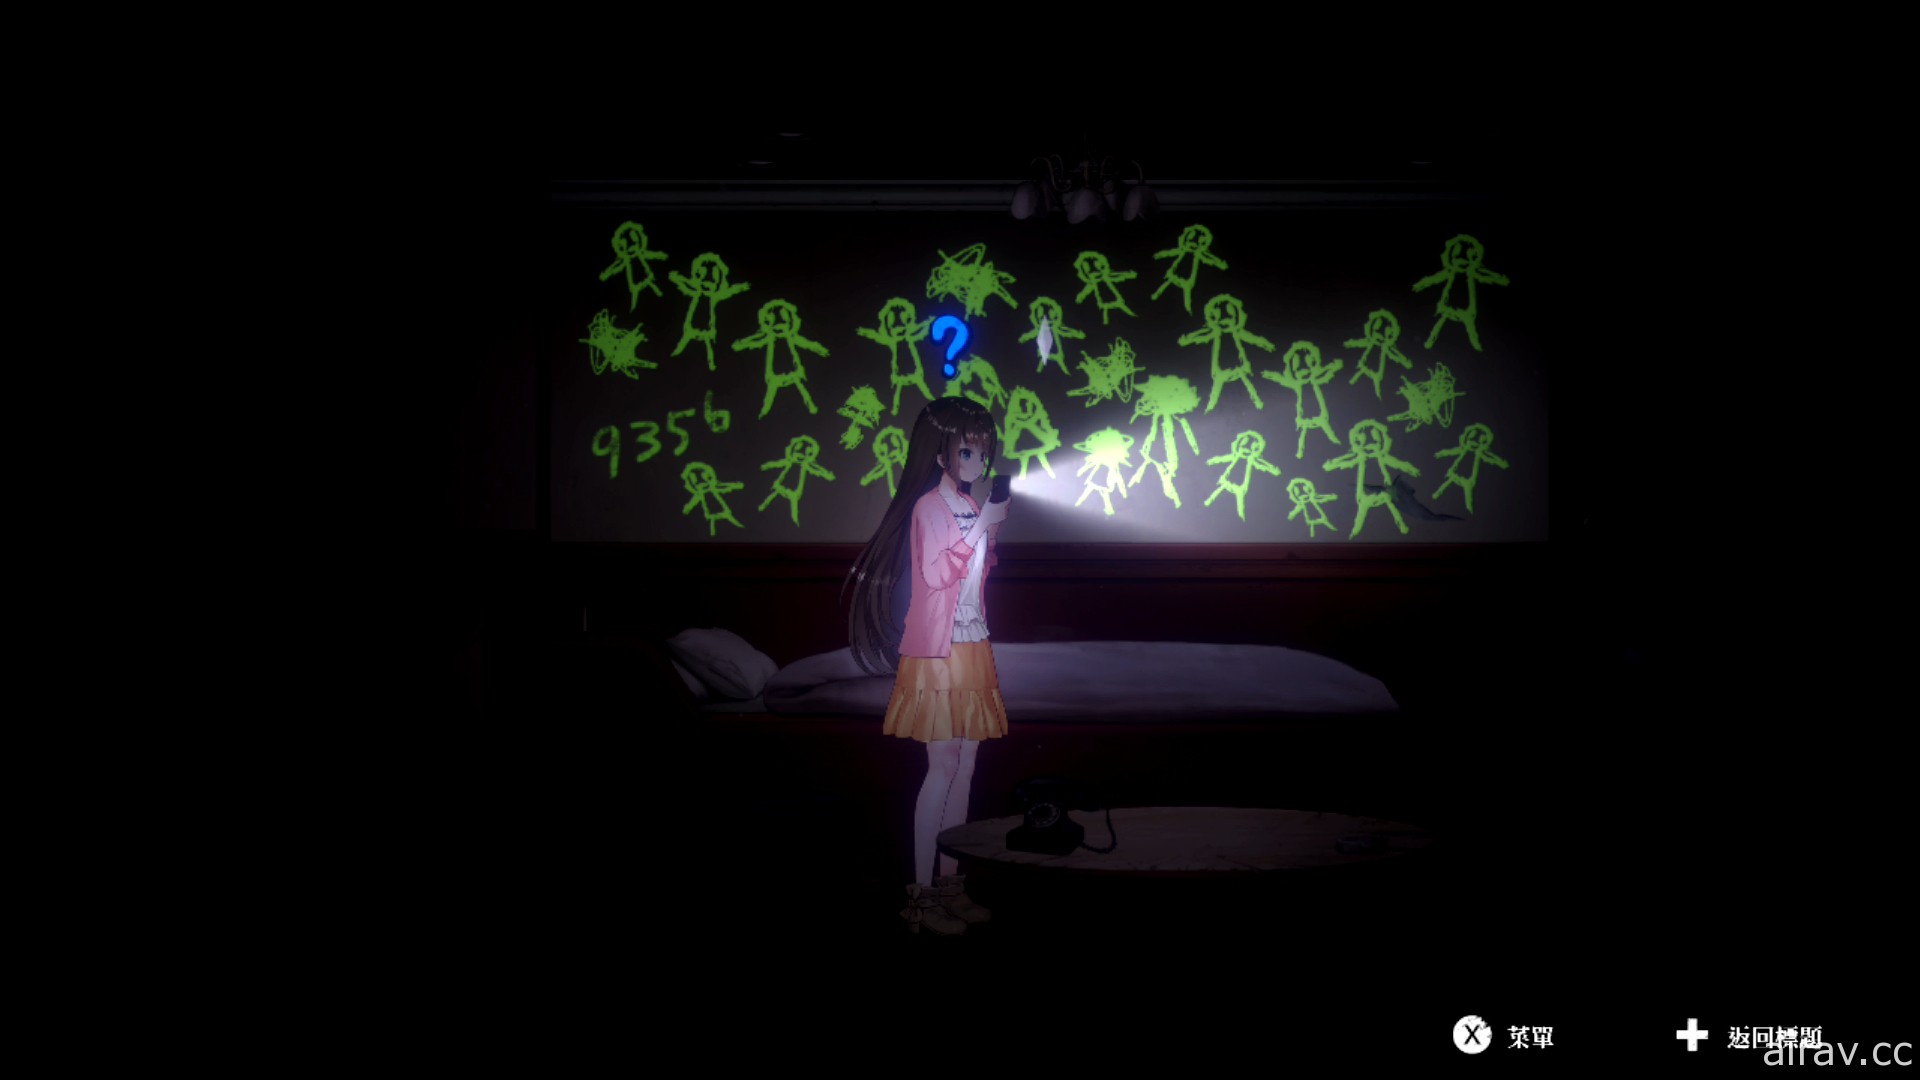 美少女生存恐怖冒险游戏《探灵直播》Switch 中文版预定 12 月 16 日上市